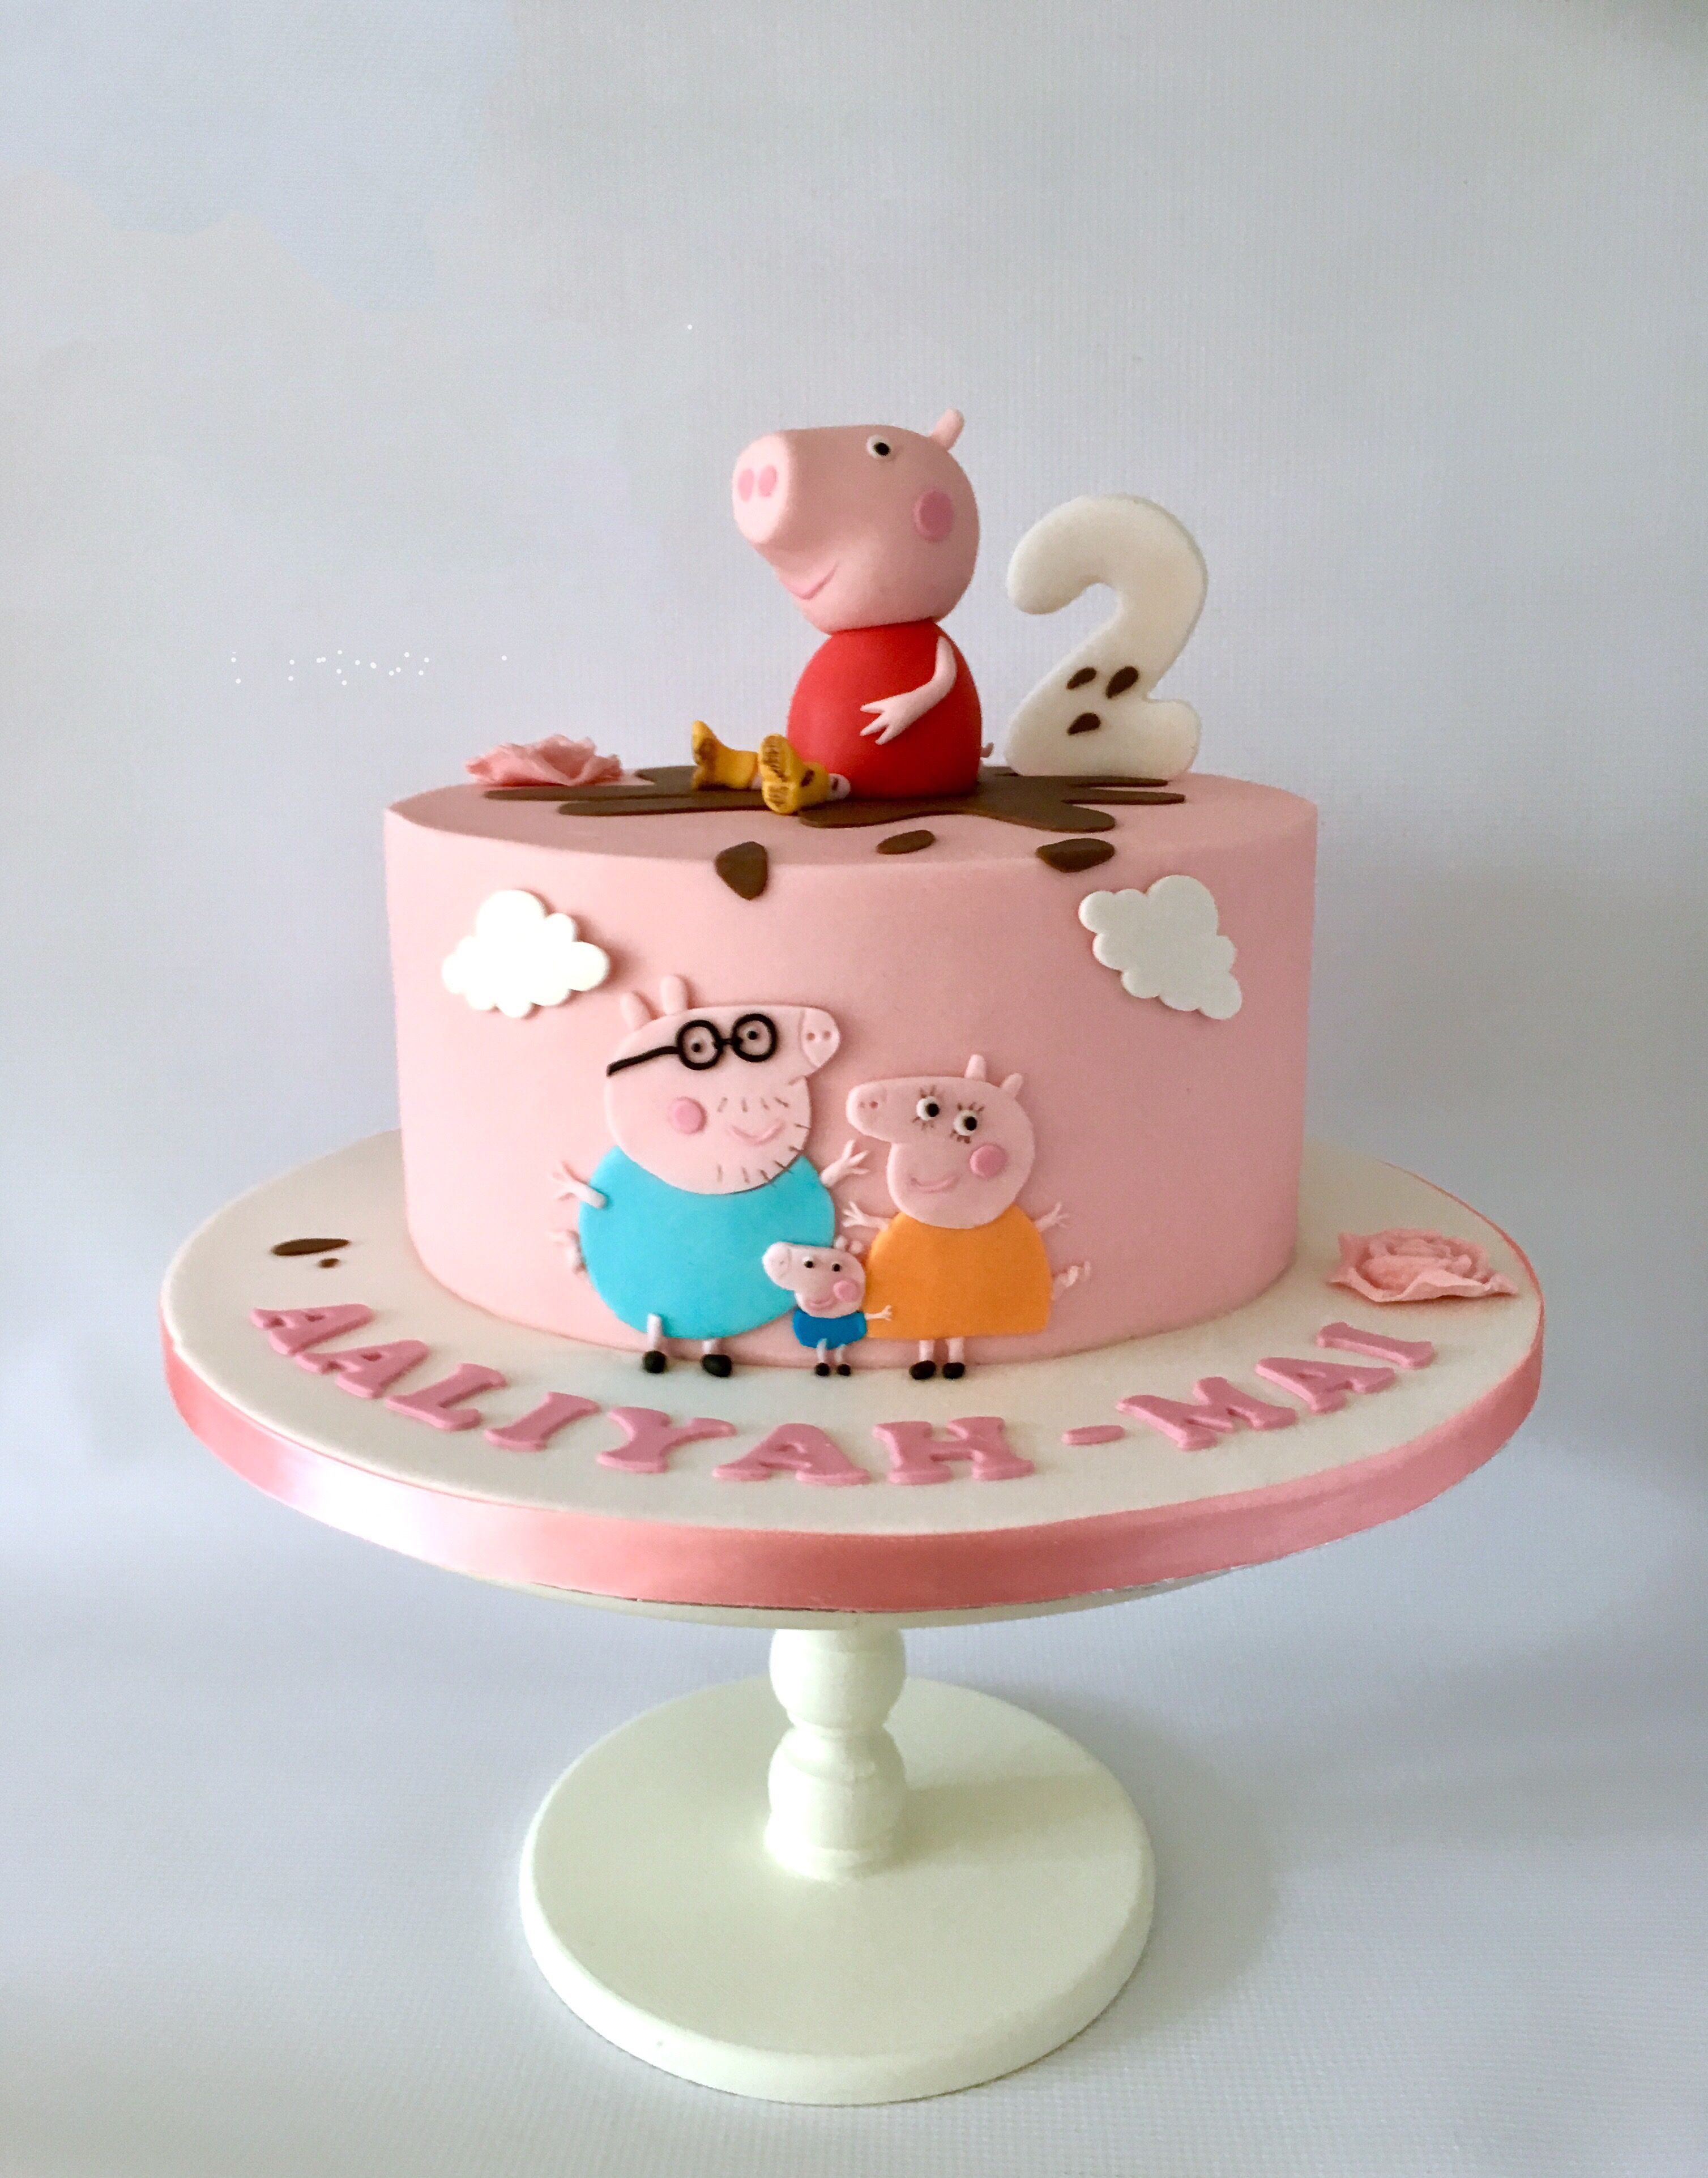 Tổng hợp hình ảnh bánh sinh nhật hình con heo dễ thương, độc lạ - [Kích thước hình ảnh: 3016x3846 px]